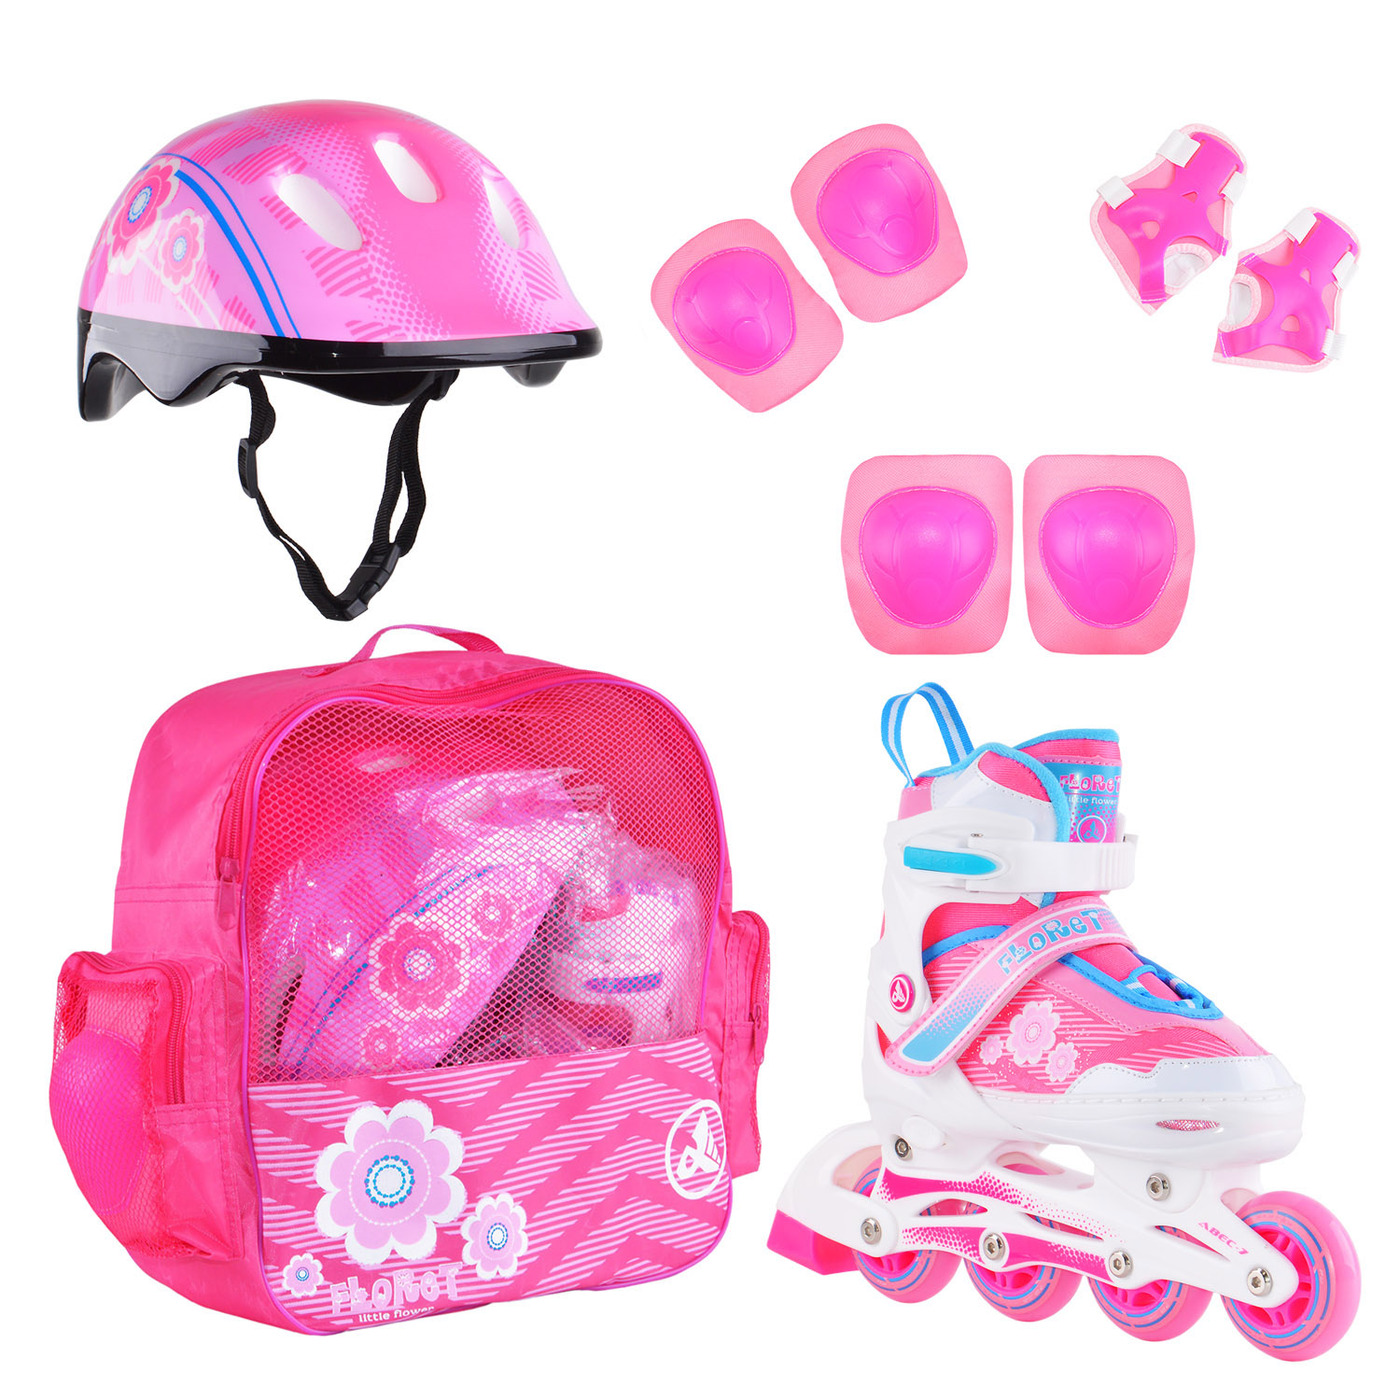 Раздвижные роликовые коньки Alpha Caprice FLORET Wh/Pink/Bl, шлем, защита, сумка M: 35-38